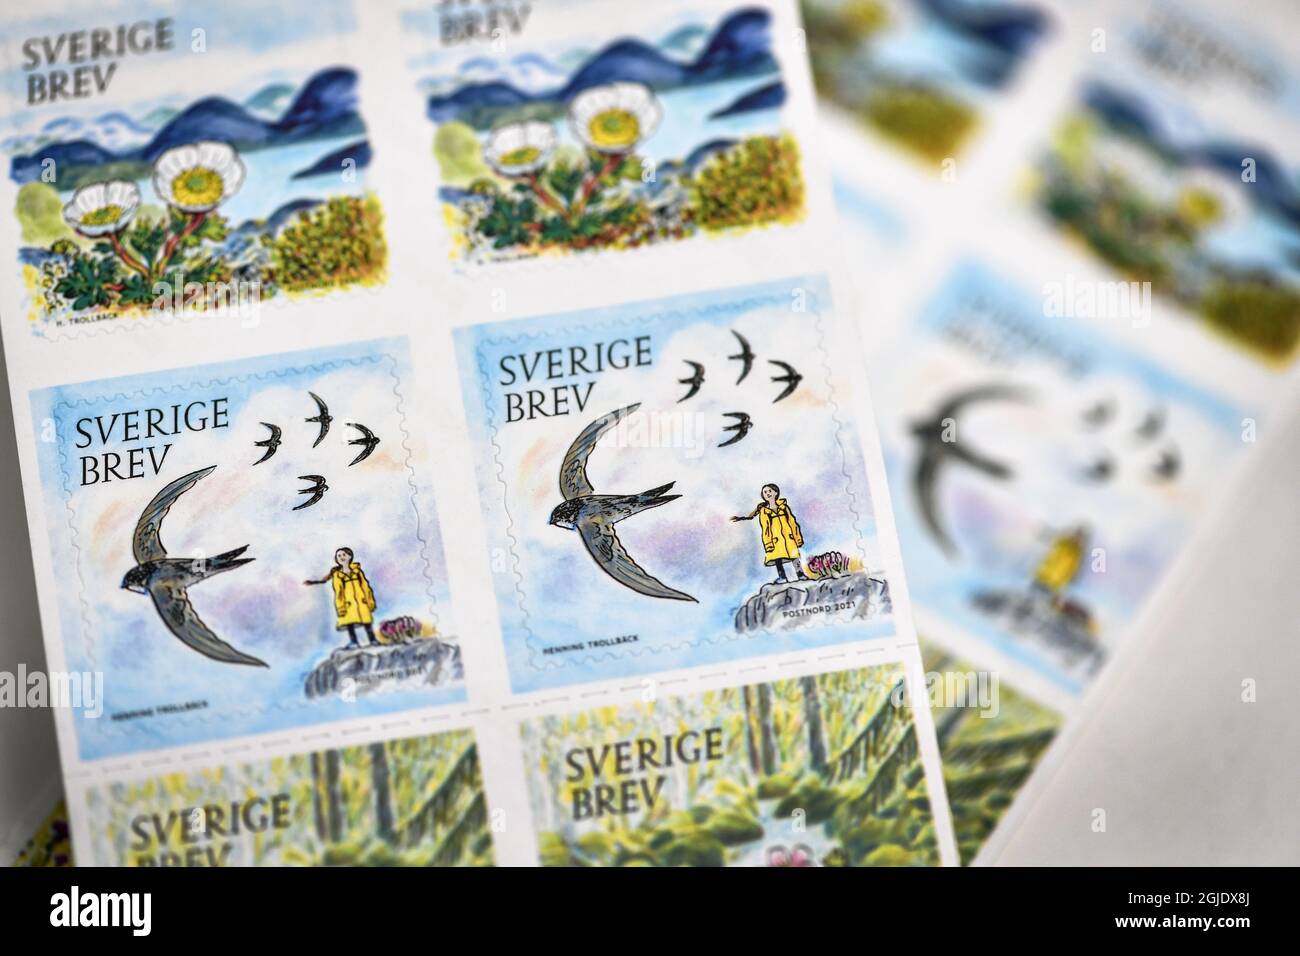 L'attivista ambientale svedese Greta Thunberg appare su un francobollo postale che fa parte di una serie incentrata sull'ambiente, illustrata da Henning Trollback e pubblicata in Svezia il 14 gennaio 2021. Foto Anders Wiklund / TT / code 10040 Foto Stock